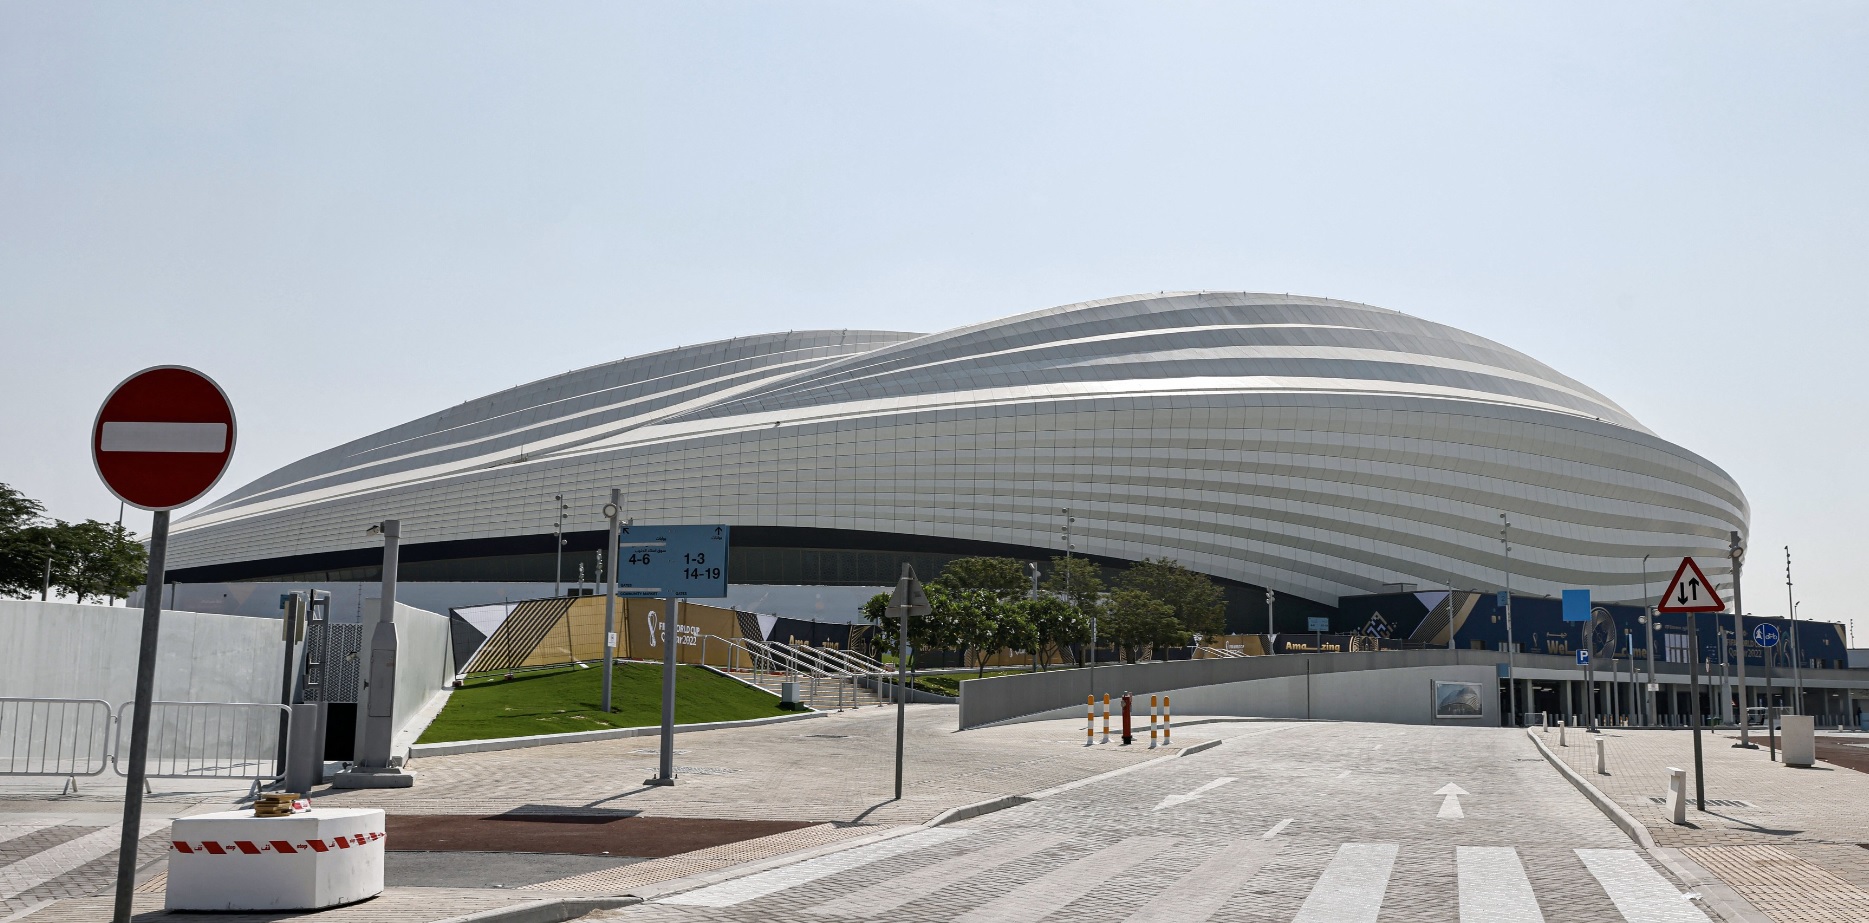 Al Janoub Stadium / Profimedia Images